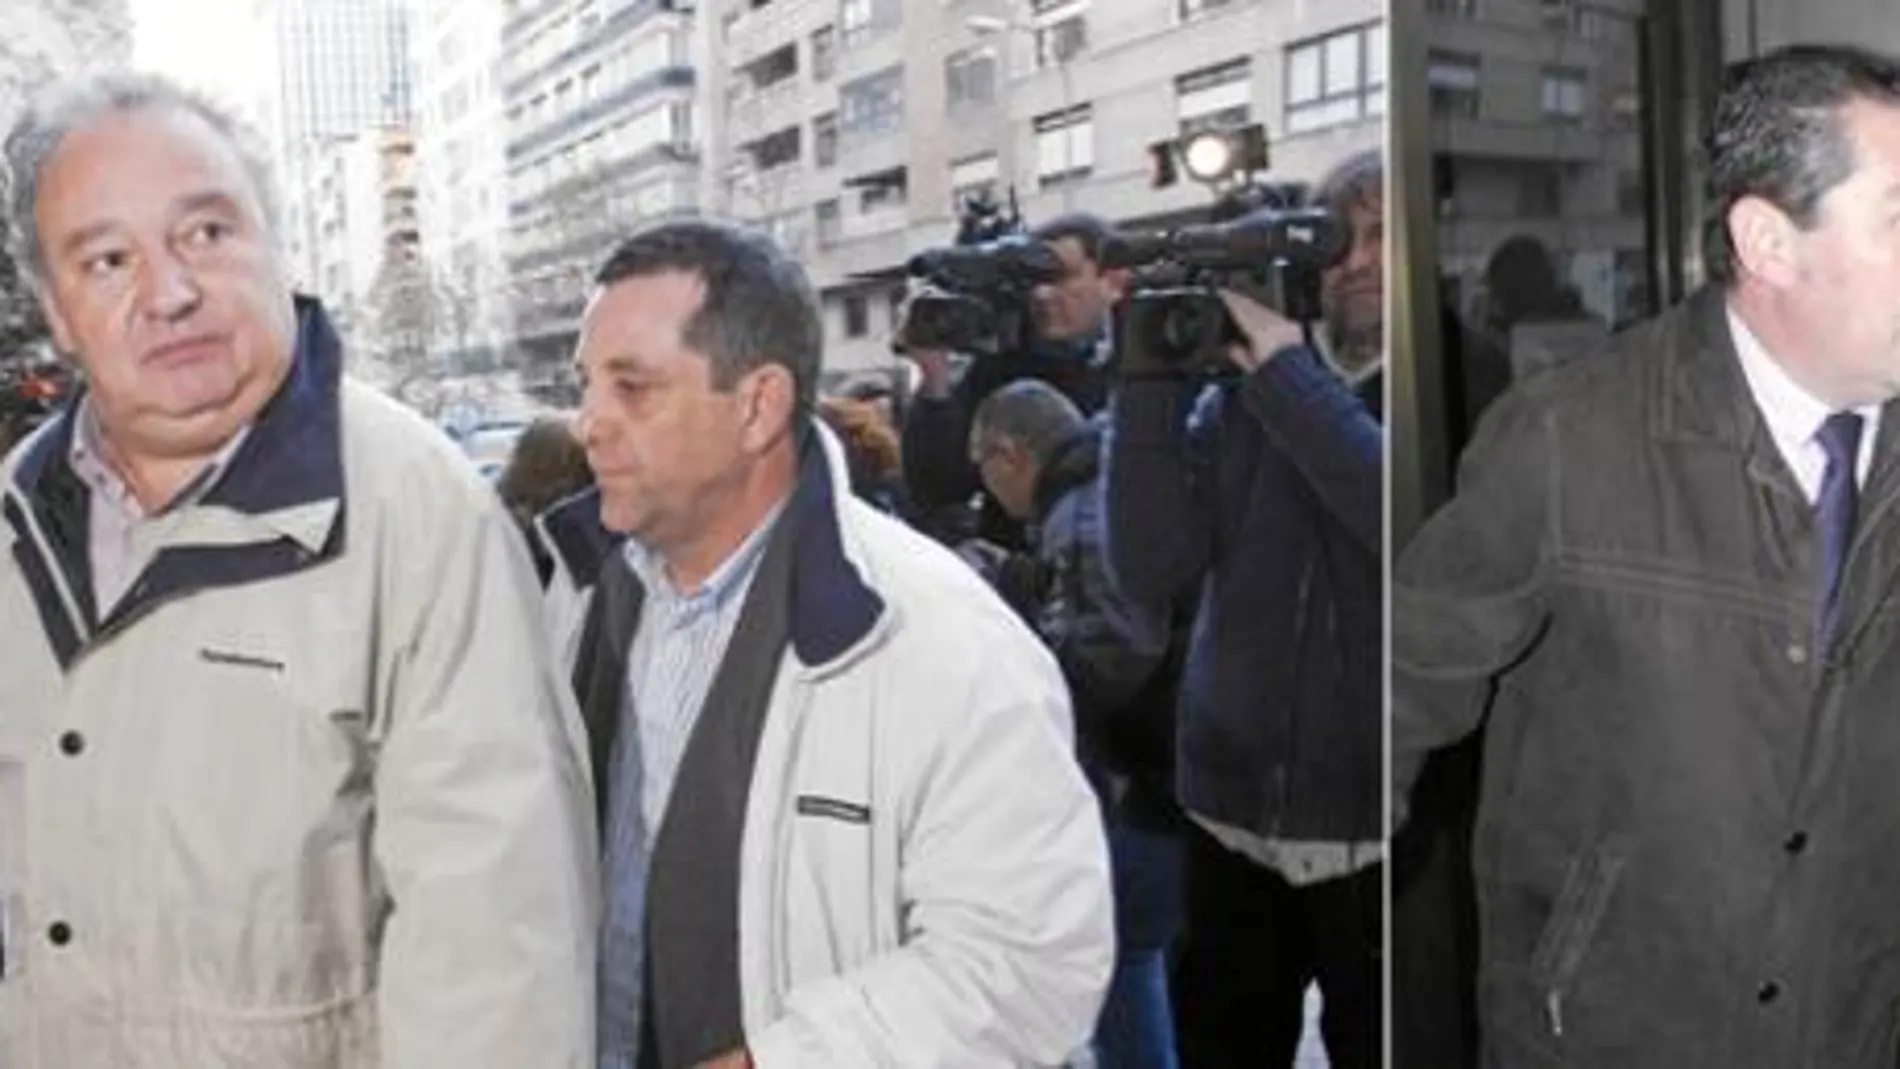 Teodoro Piñuelas y Vicente Rodríguez, los que fueran portavoces del Comité de huelga de Metro, acudieron ayer al juzgado de lo Social 16 de Madrid en calidad de imputados por los paros salvajes del pasado mes de junio.